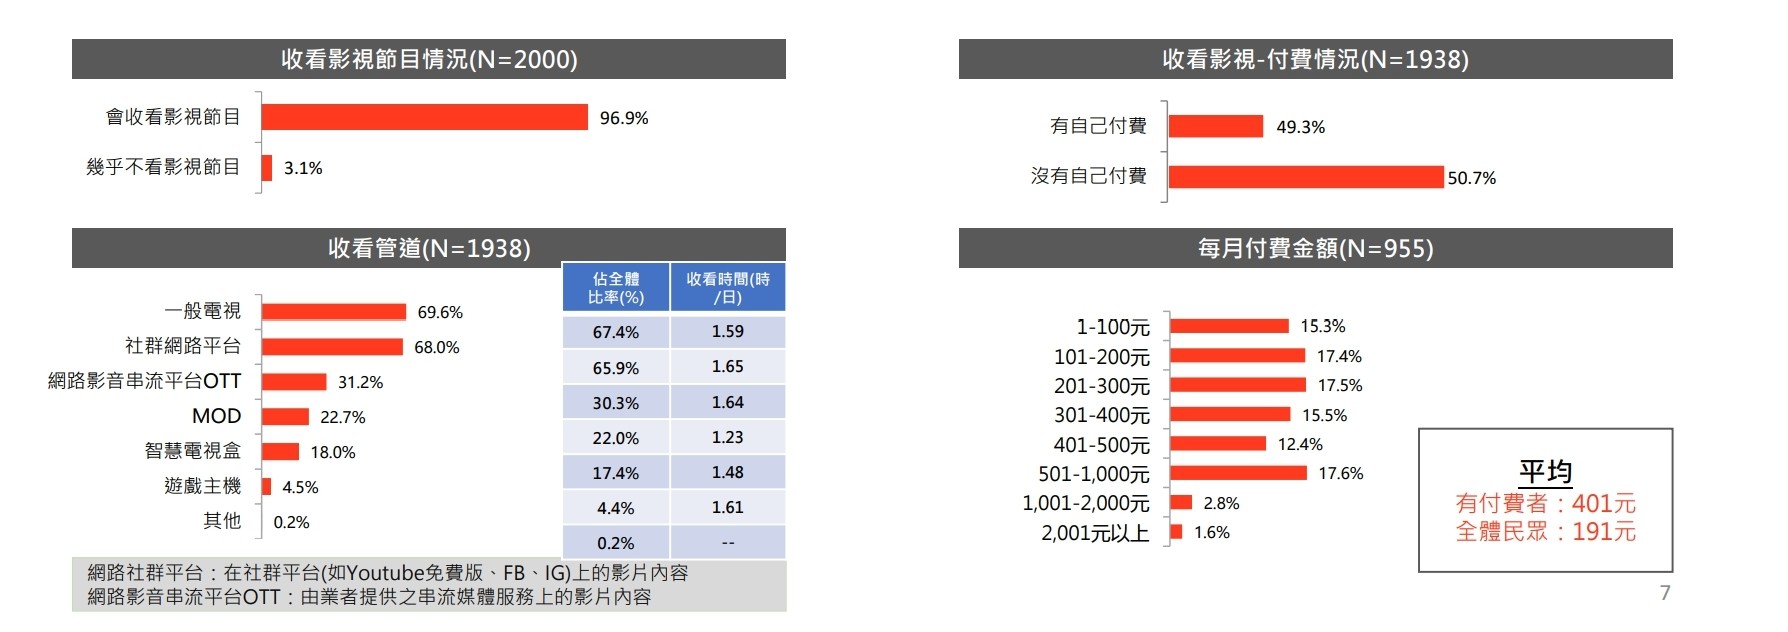 文策院发表文化内容消费趋势调查 台湾手游玩家人数众多、付费比率 26.6%